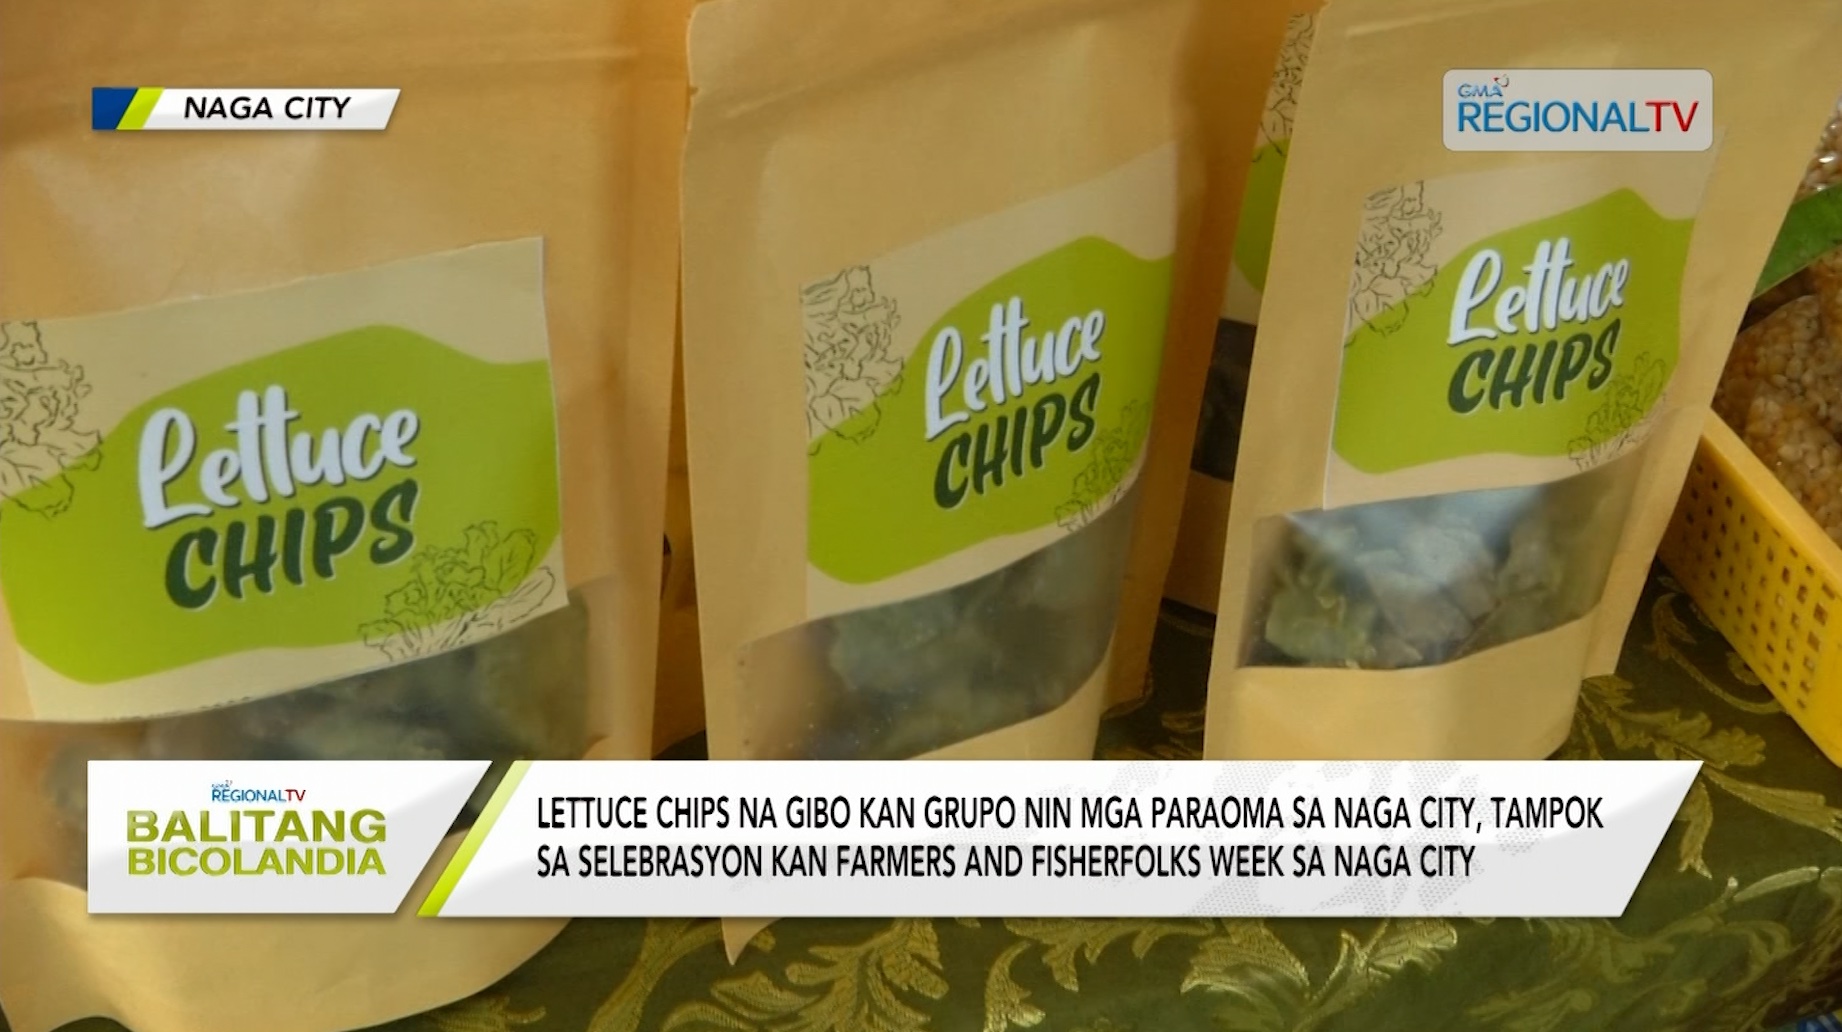 Lettuce chips na gibo kan grupo nin mga paraoma sa Naga City, ipigtampok